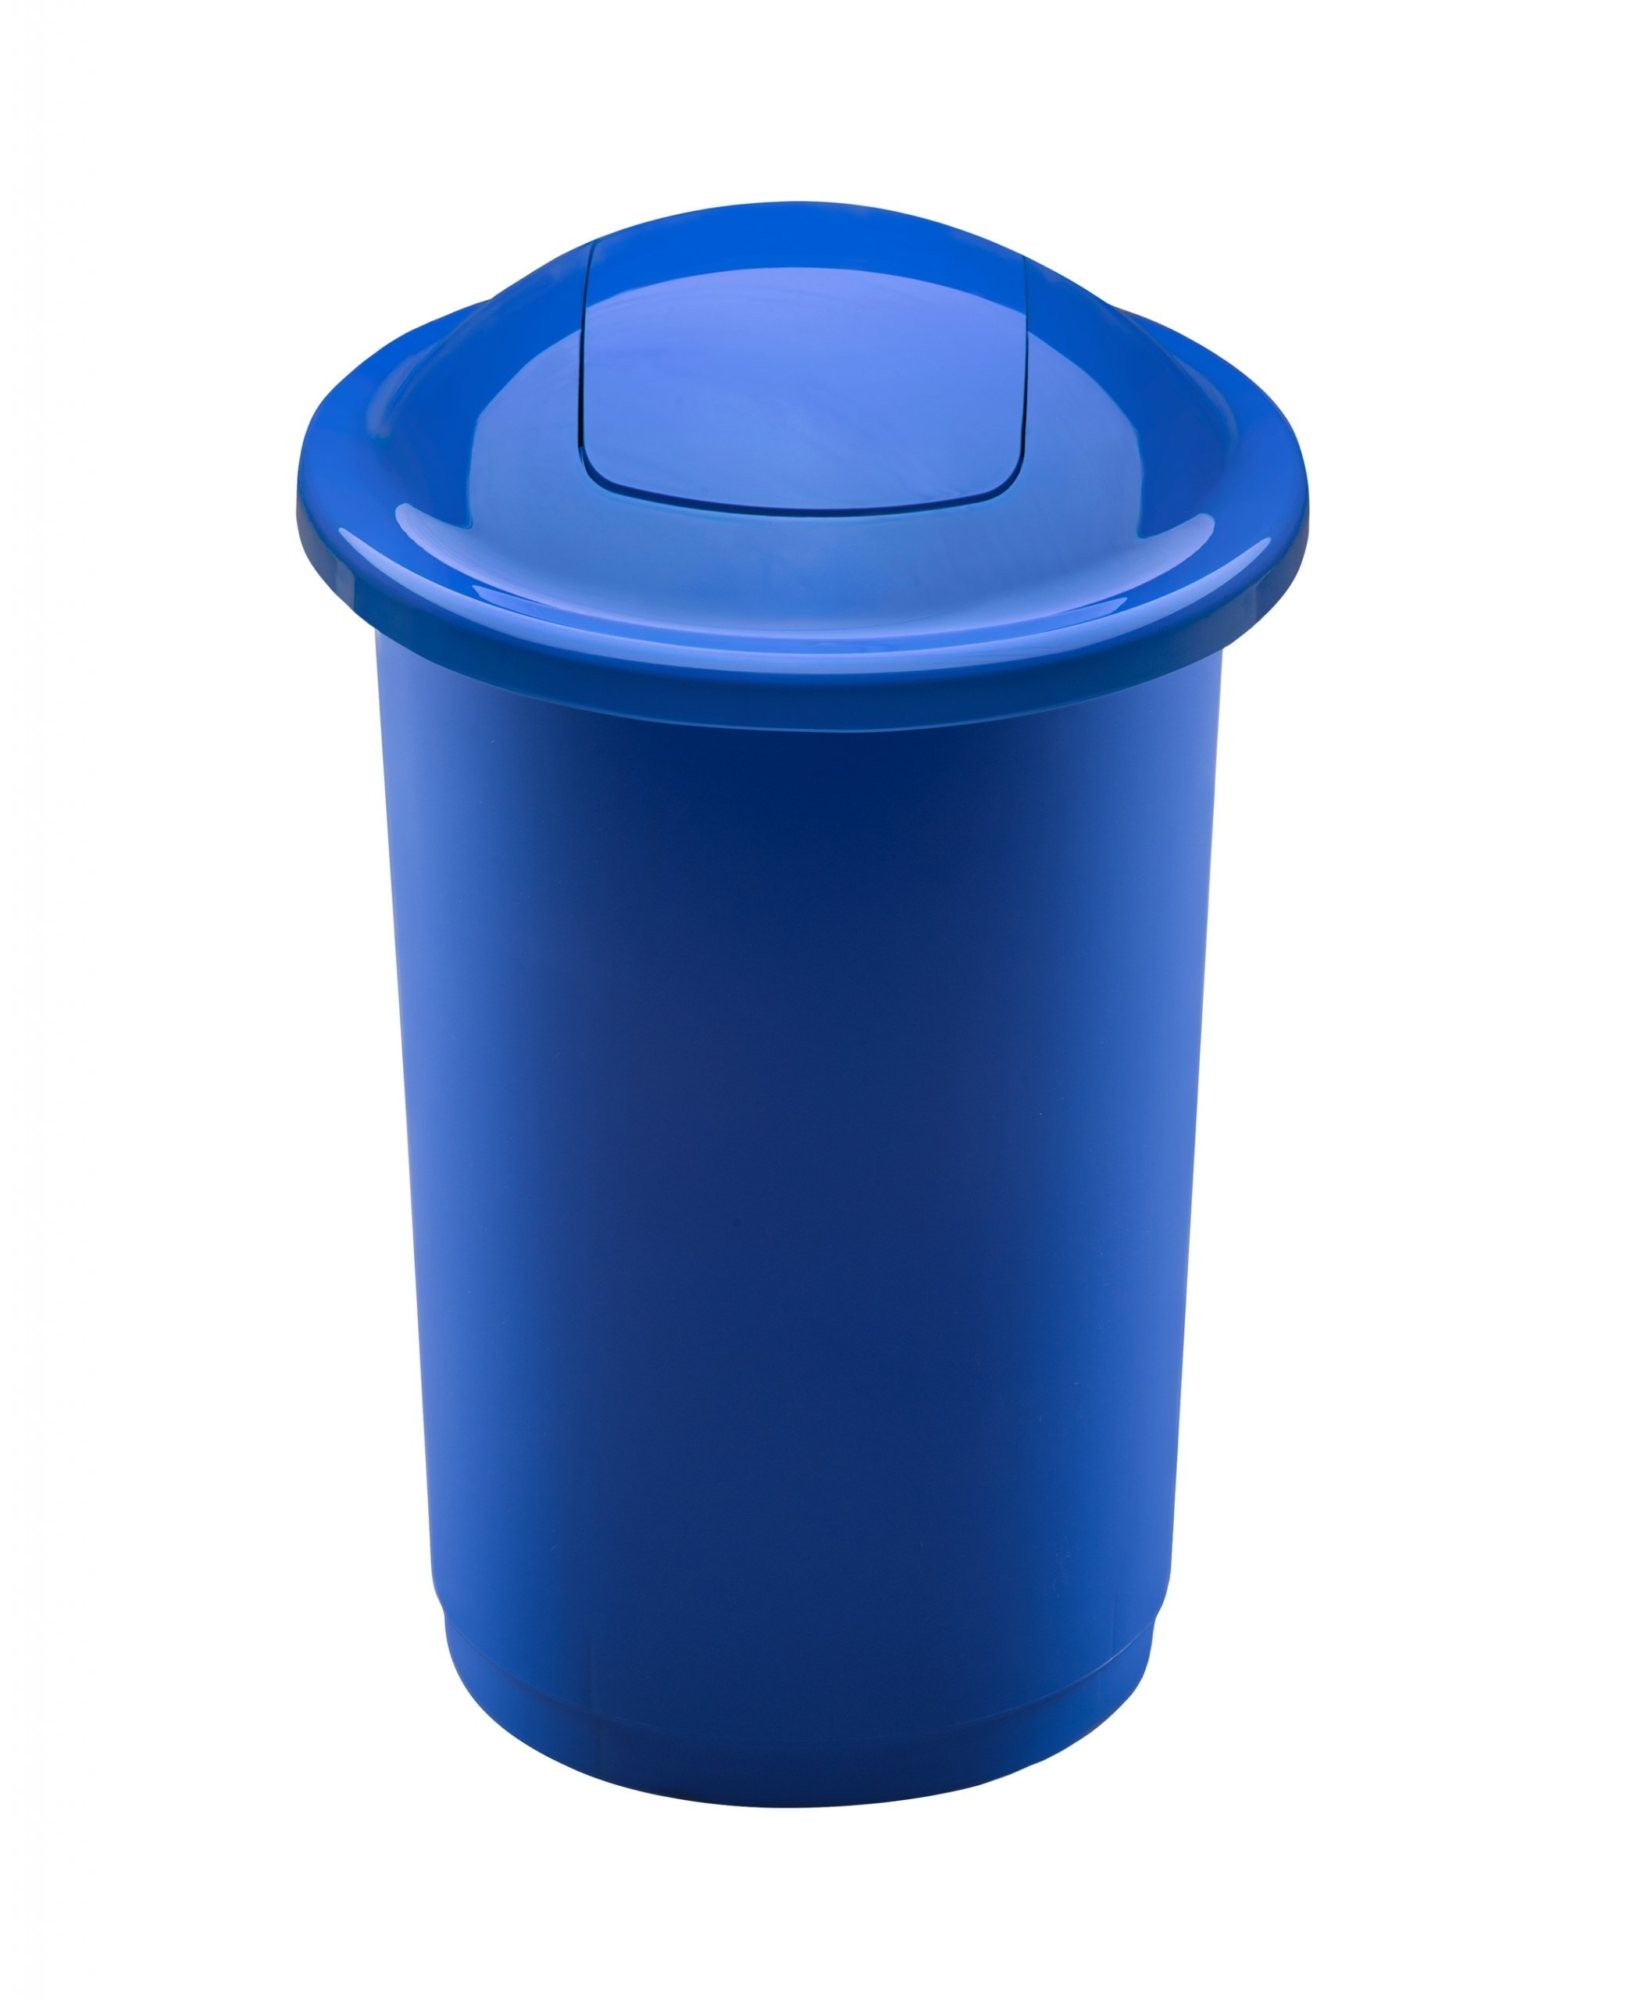 Cos plastic reciclare selectiva, capacitate 50l, PLAFOR Top - albastru cu capac albastru - hartie